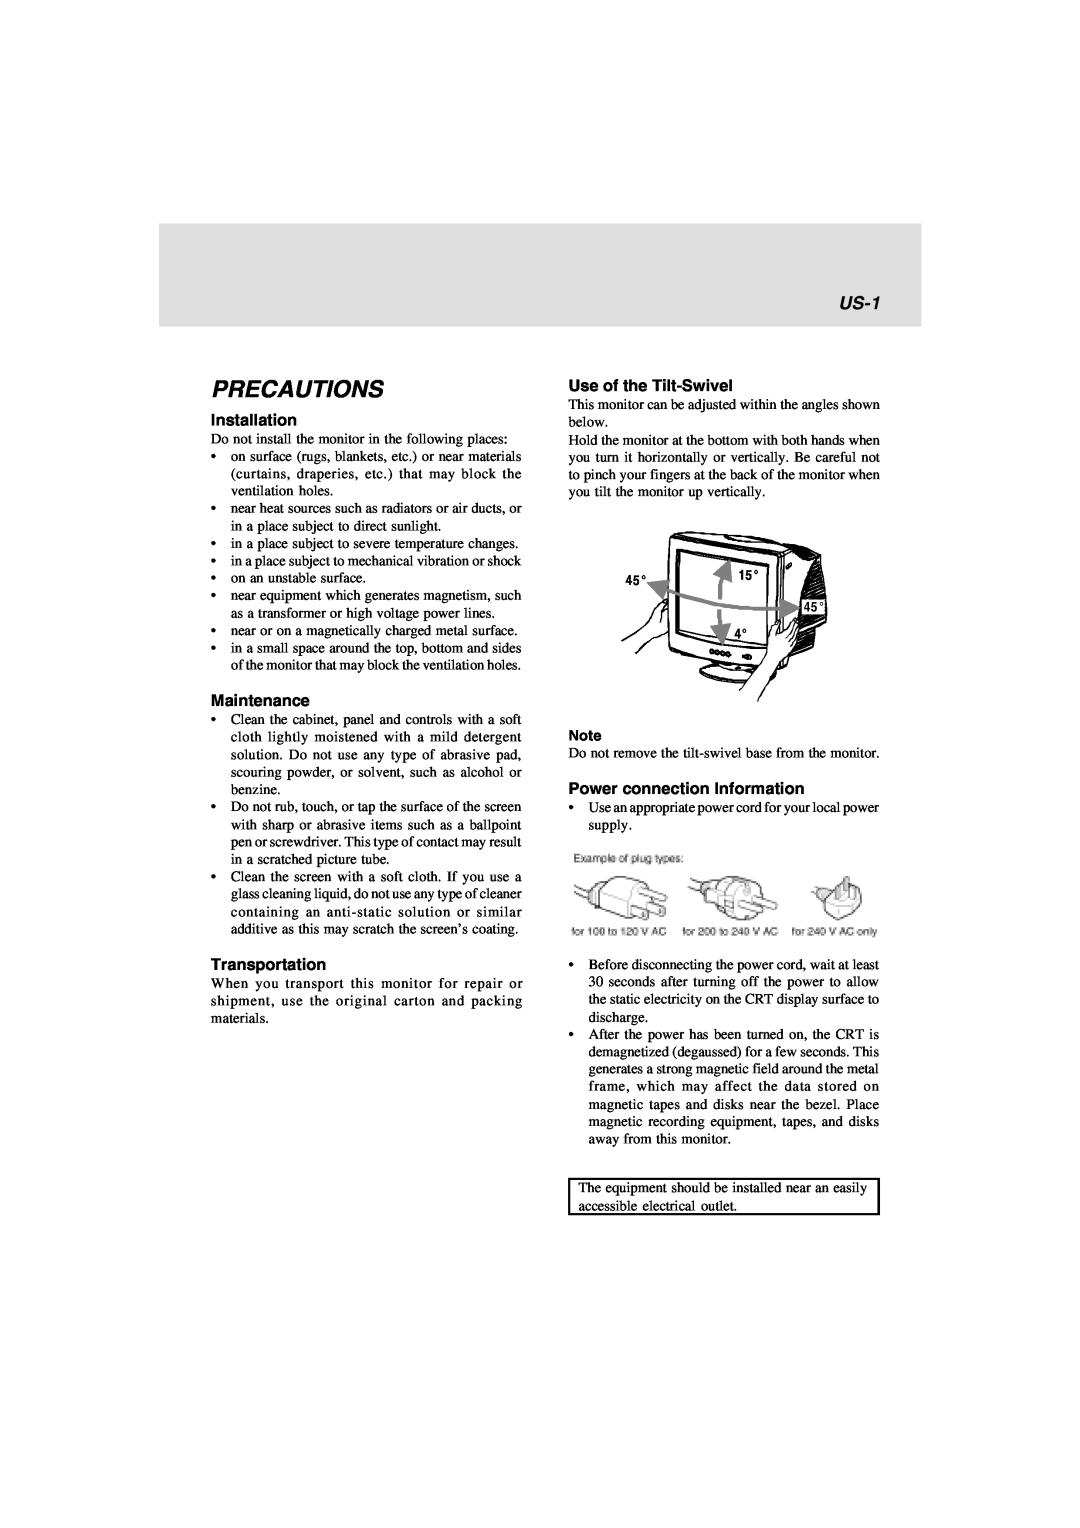 Lenovo E74 manual Precautions, US-1 